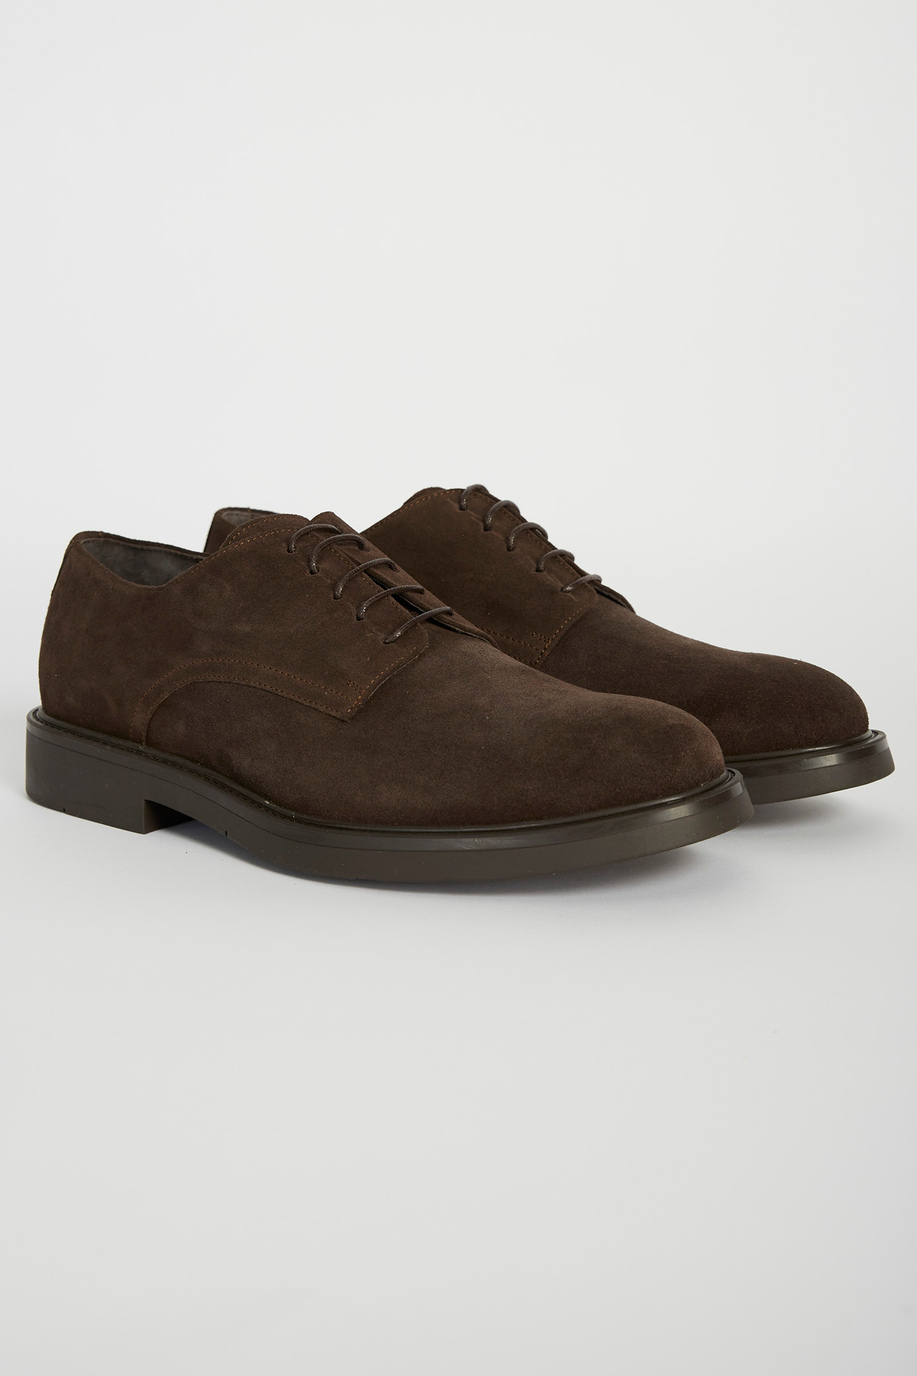 Classic leather shoe - Shoes | La Martina - Official Online Shop